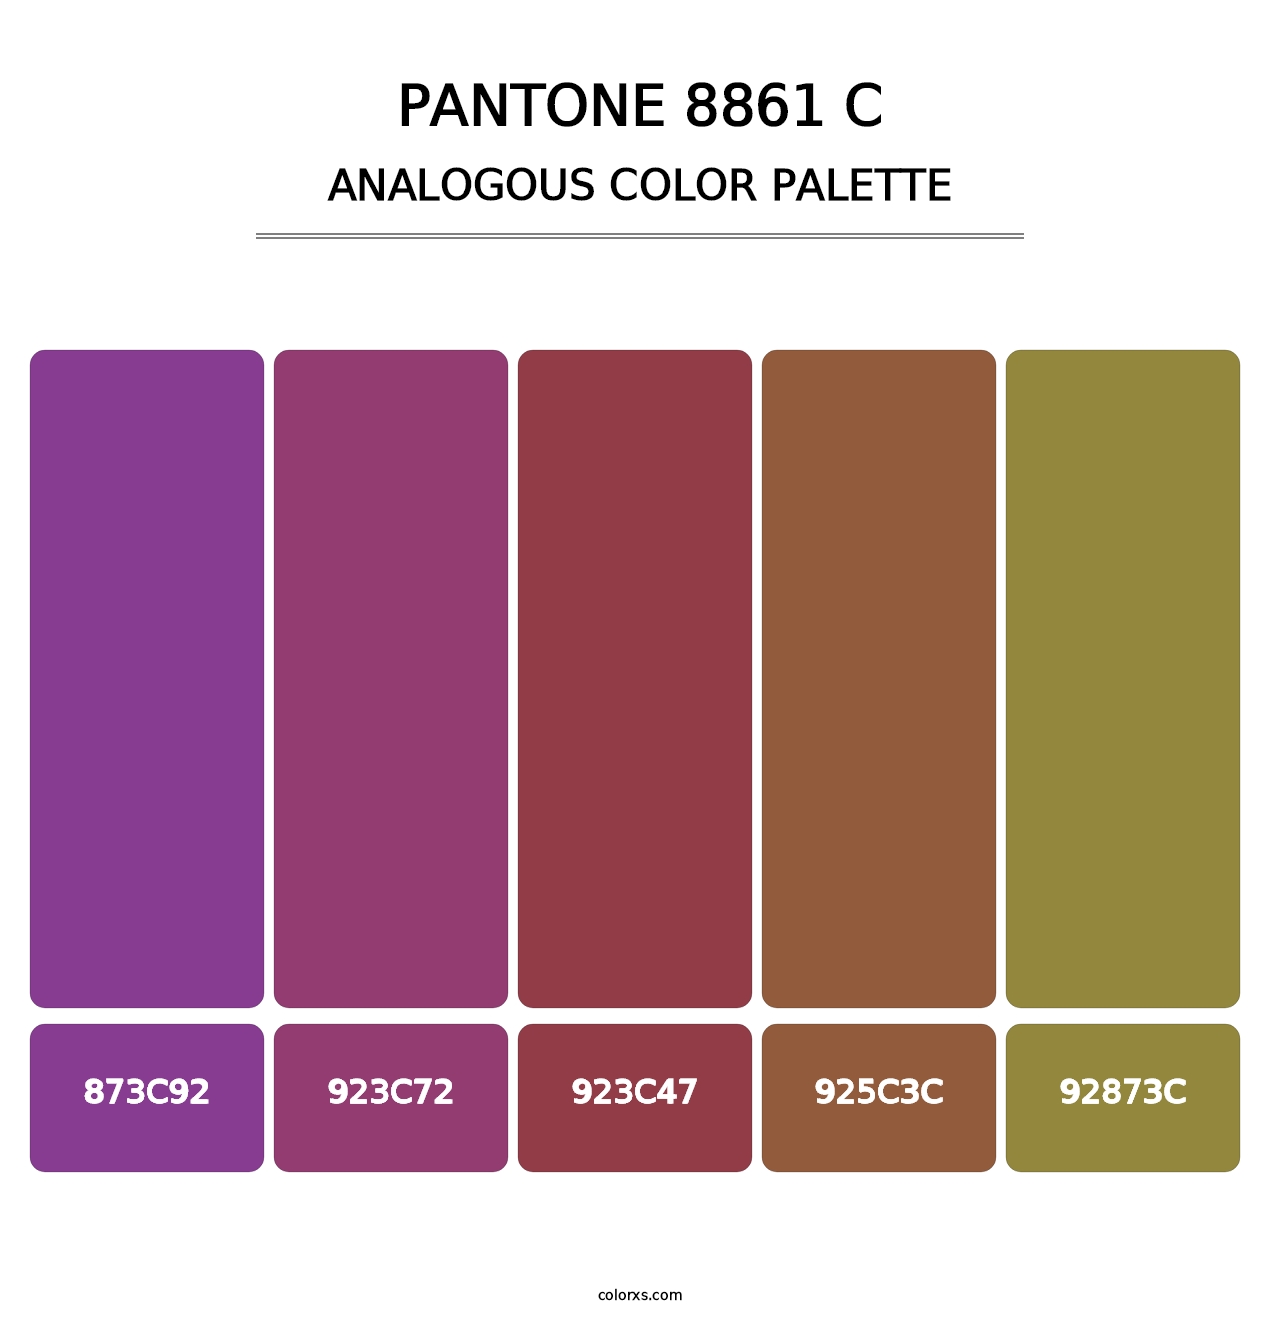 PANTONE 8861 C - Analogous Color Palette